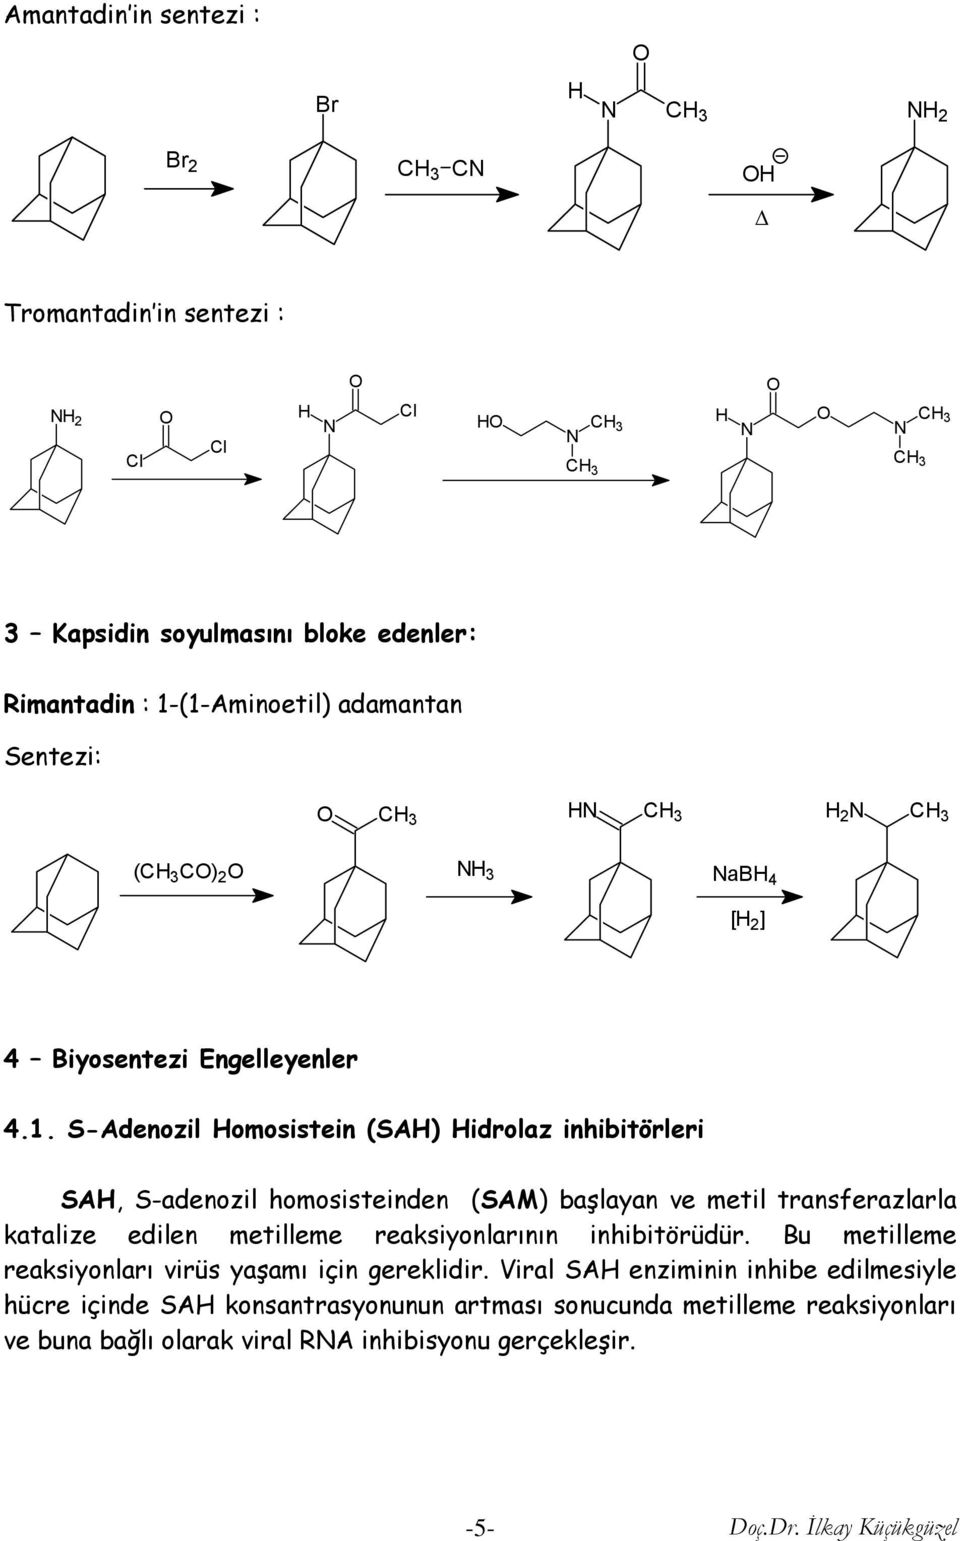 S-Adenozil omosistein (SA) idrolaz inhibitörleri SA, S-adenozil homosisteinden (SAM) başlayan ve metil transferazlarla katalize edilen metilleme